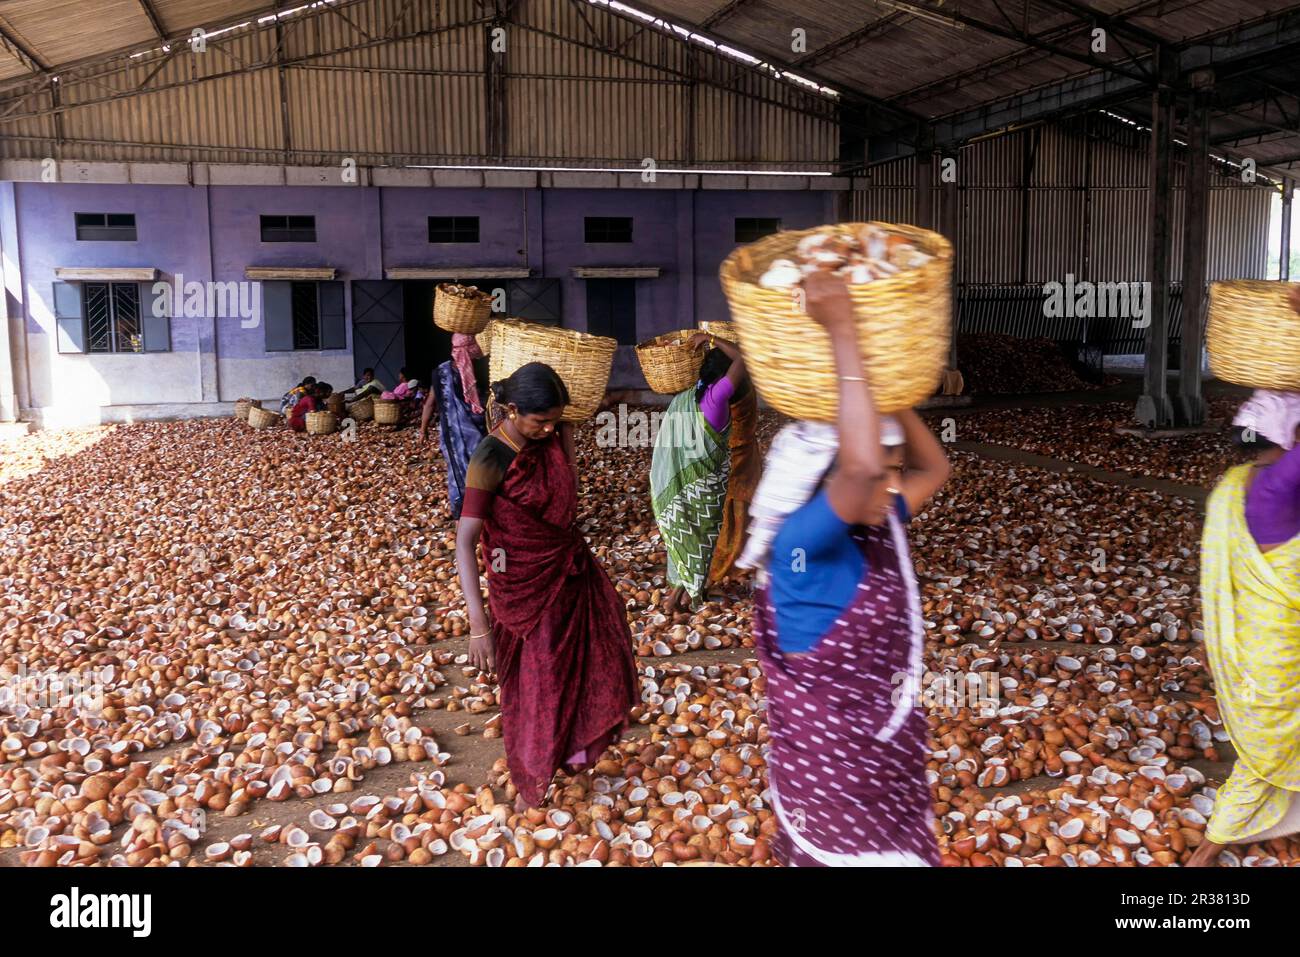 Arbeiter, die getrocknete Kokosnüsse auf Körben in einer Ölförderfabrik in Vellakoil Vellakovil Tamil Nadu, Südindien, Indien, Asien trugen Stockfoto